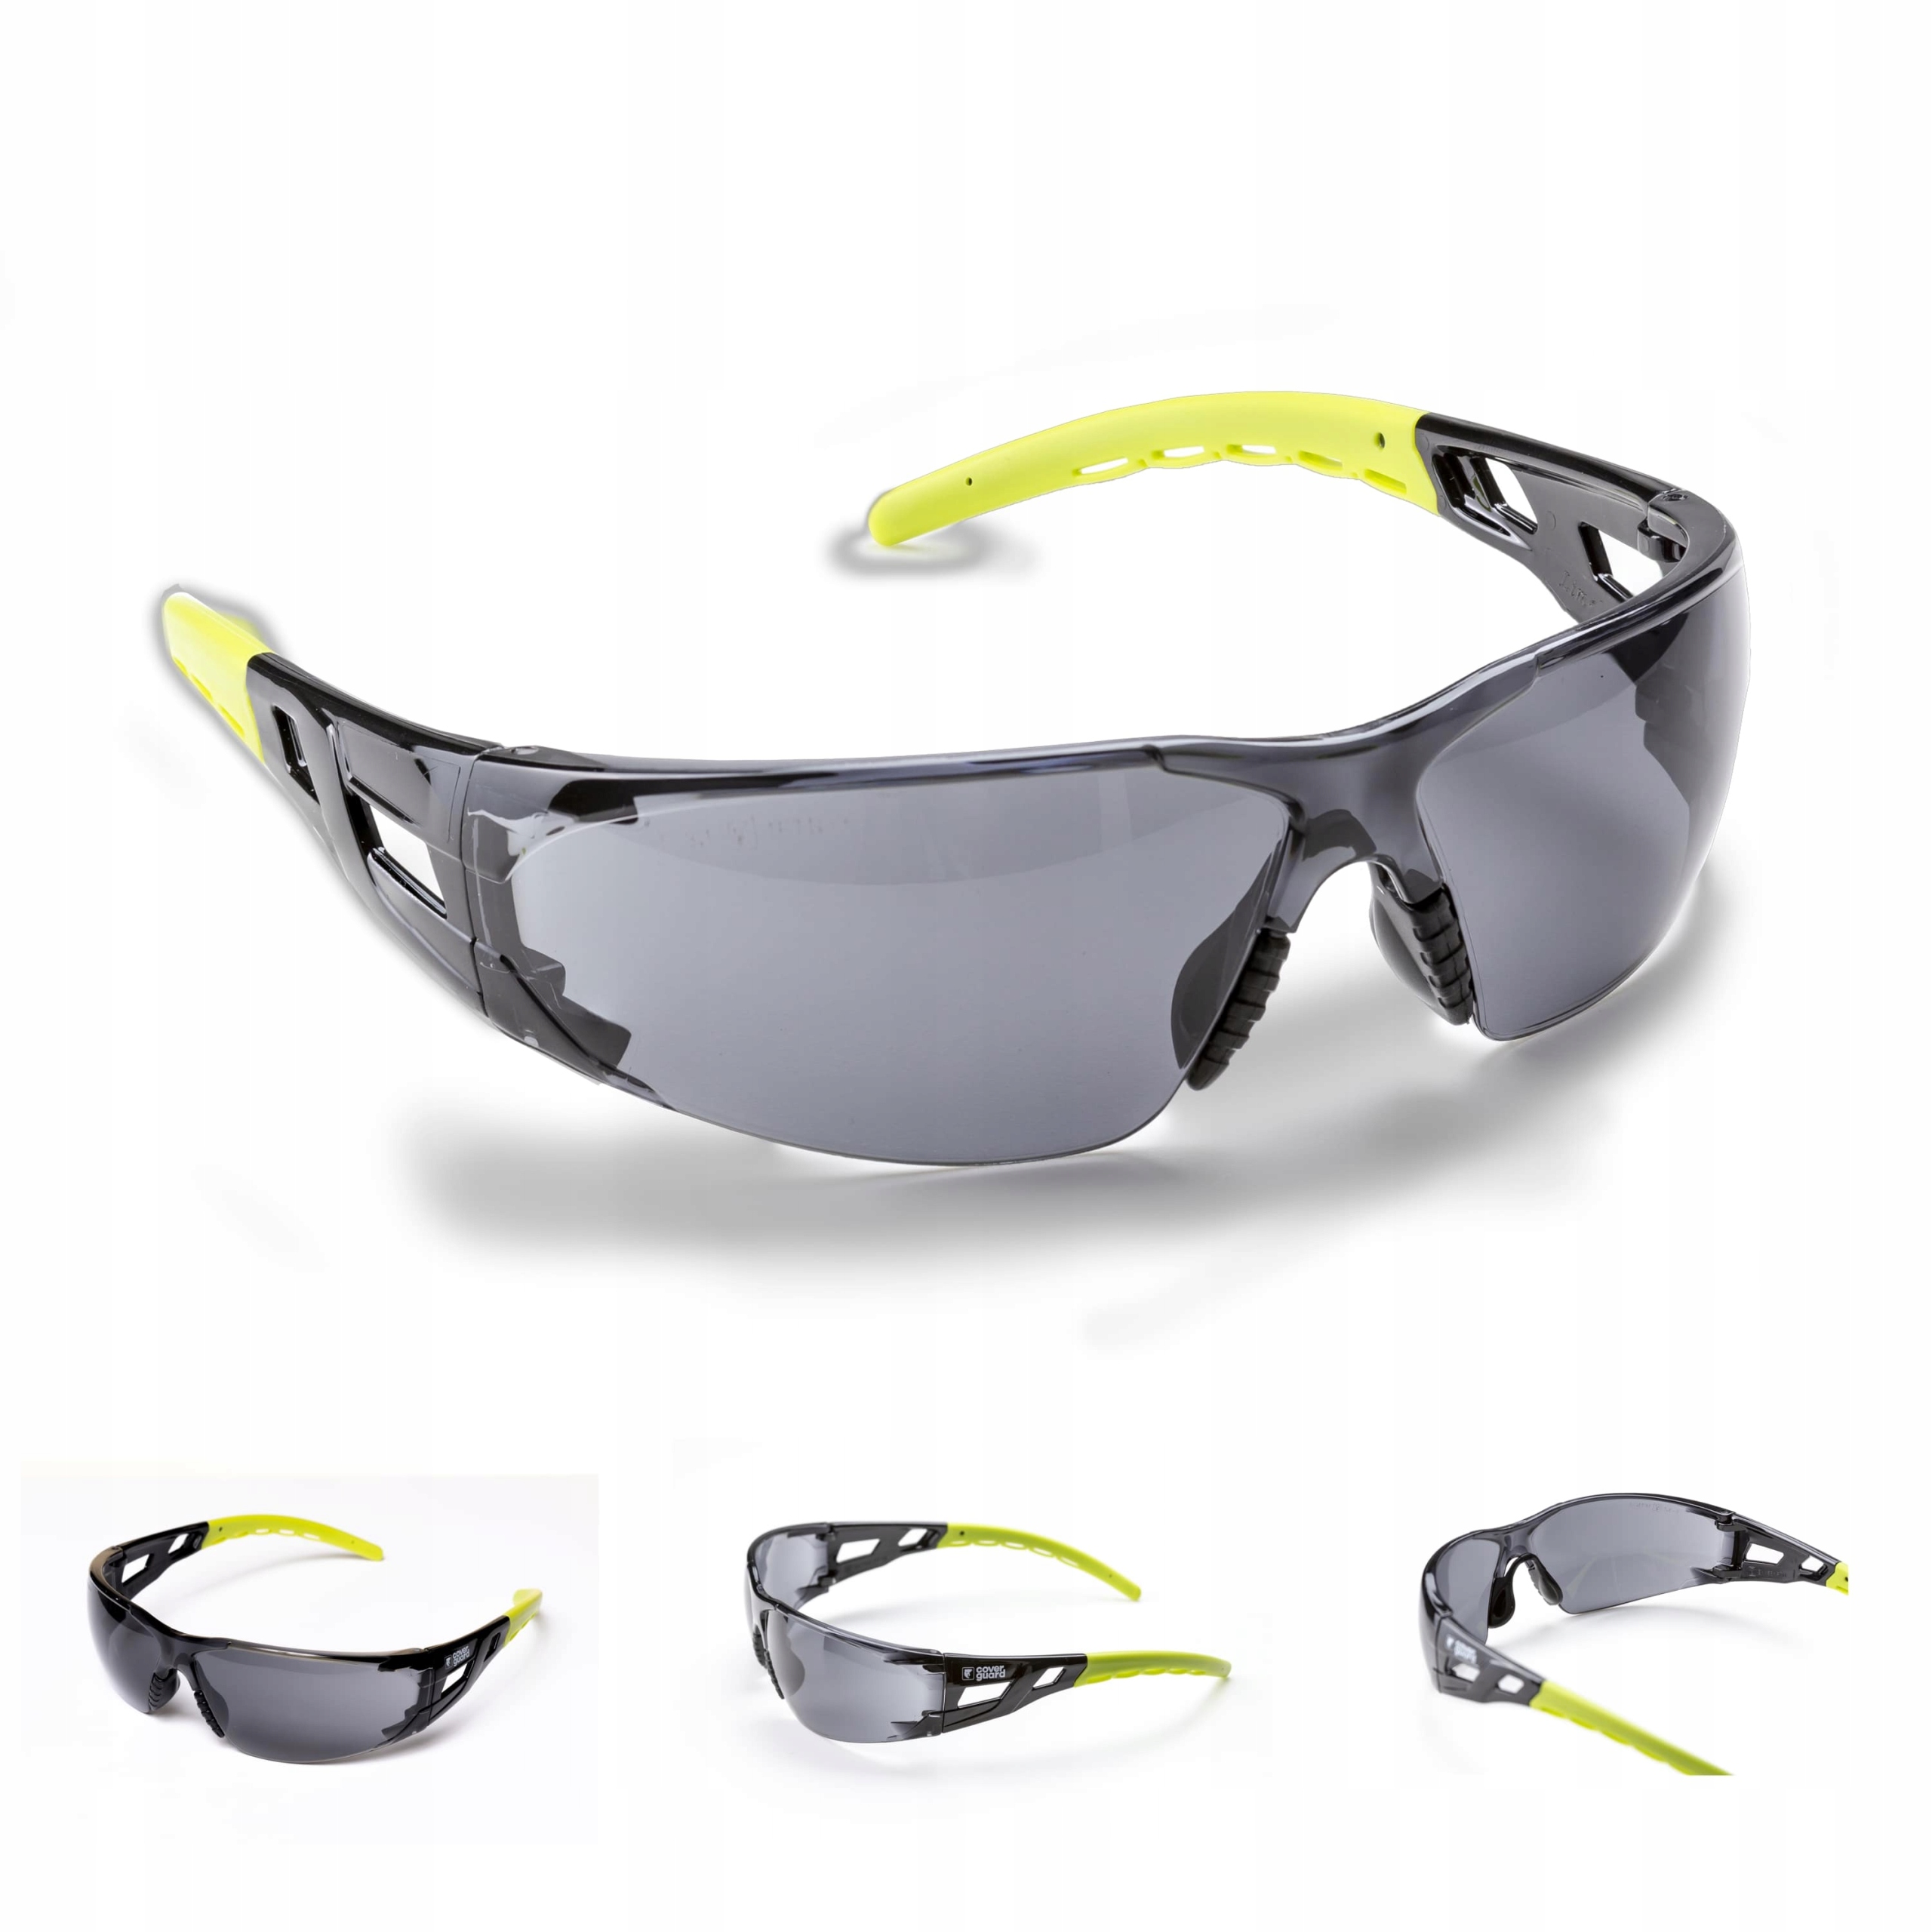 Купить затемненные очки. Delta Plus Kilimandjaro Smoke Safety Glasses. Очки открытого типа светлые Сургут ( покрытие от царапин Алмаз). Очки ассортимента PNG. Очки Coverguard защитные отзывы.